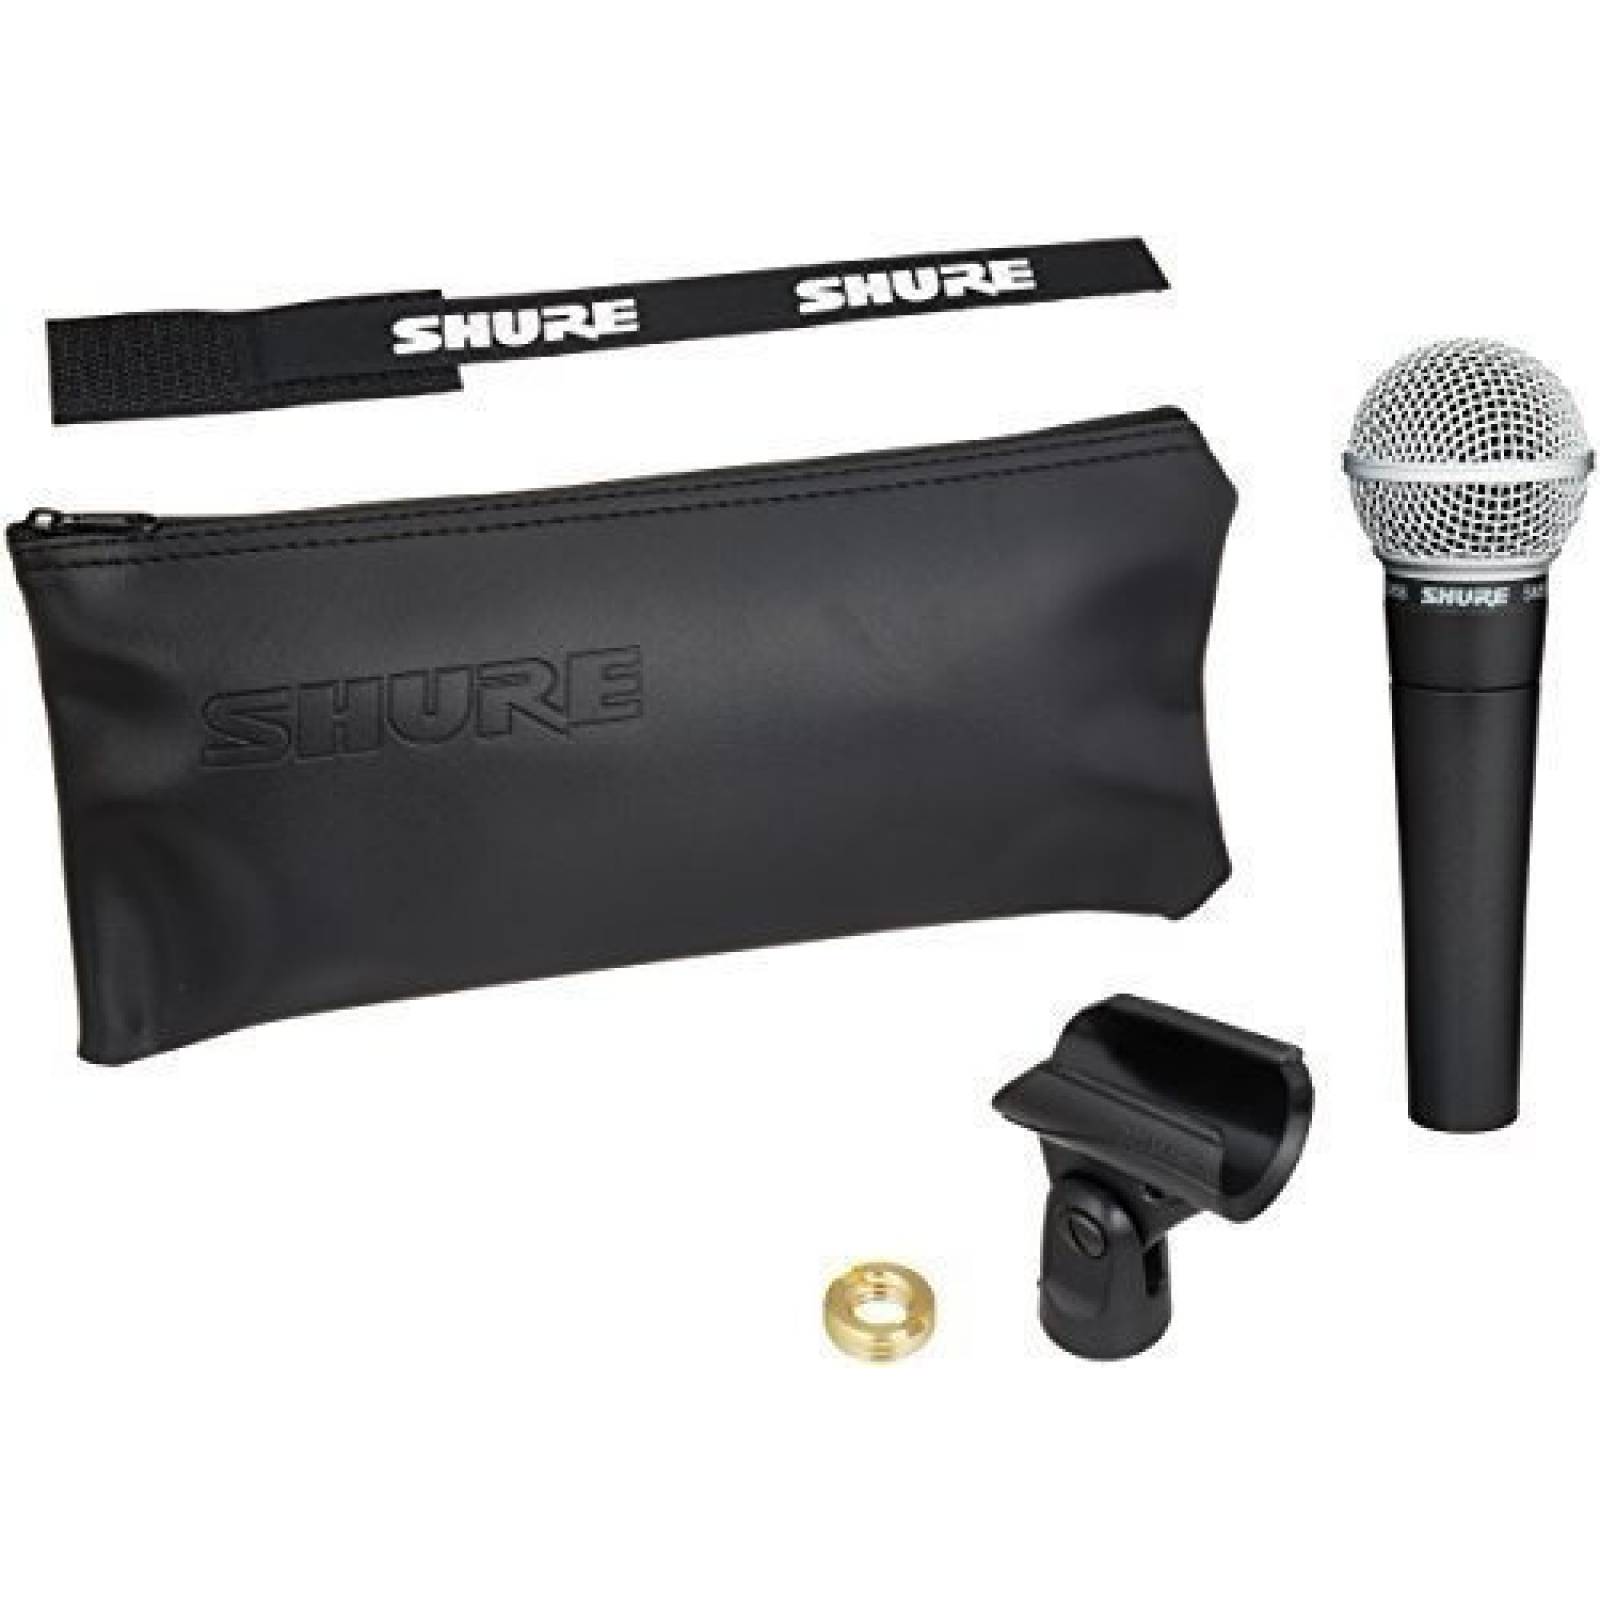 Micrófono inalámbrico de mano Shure, con micrófono profesional